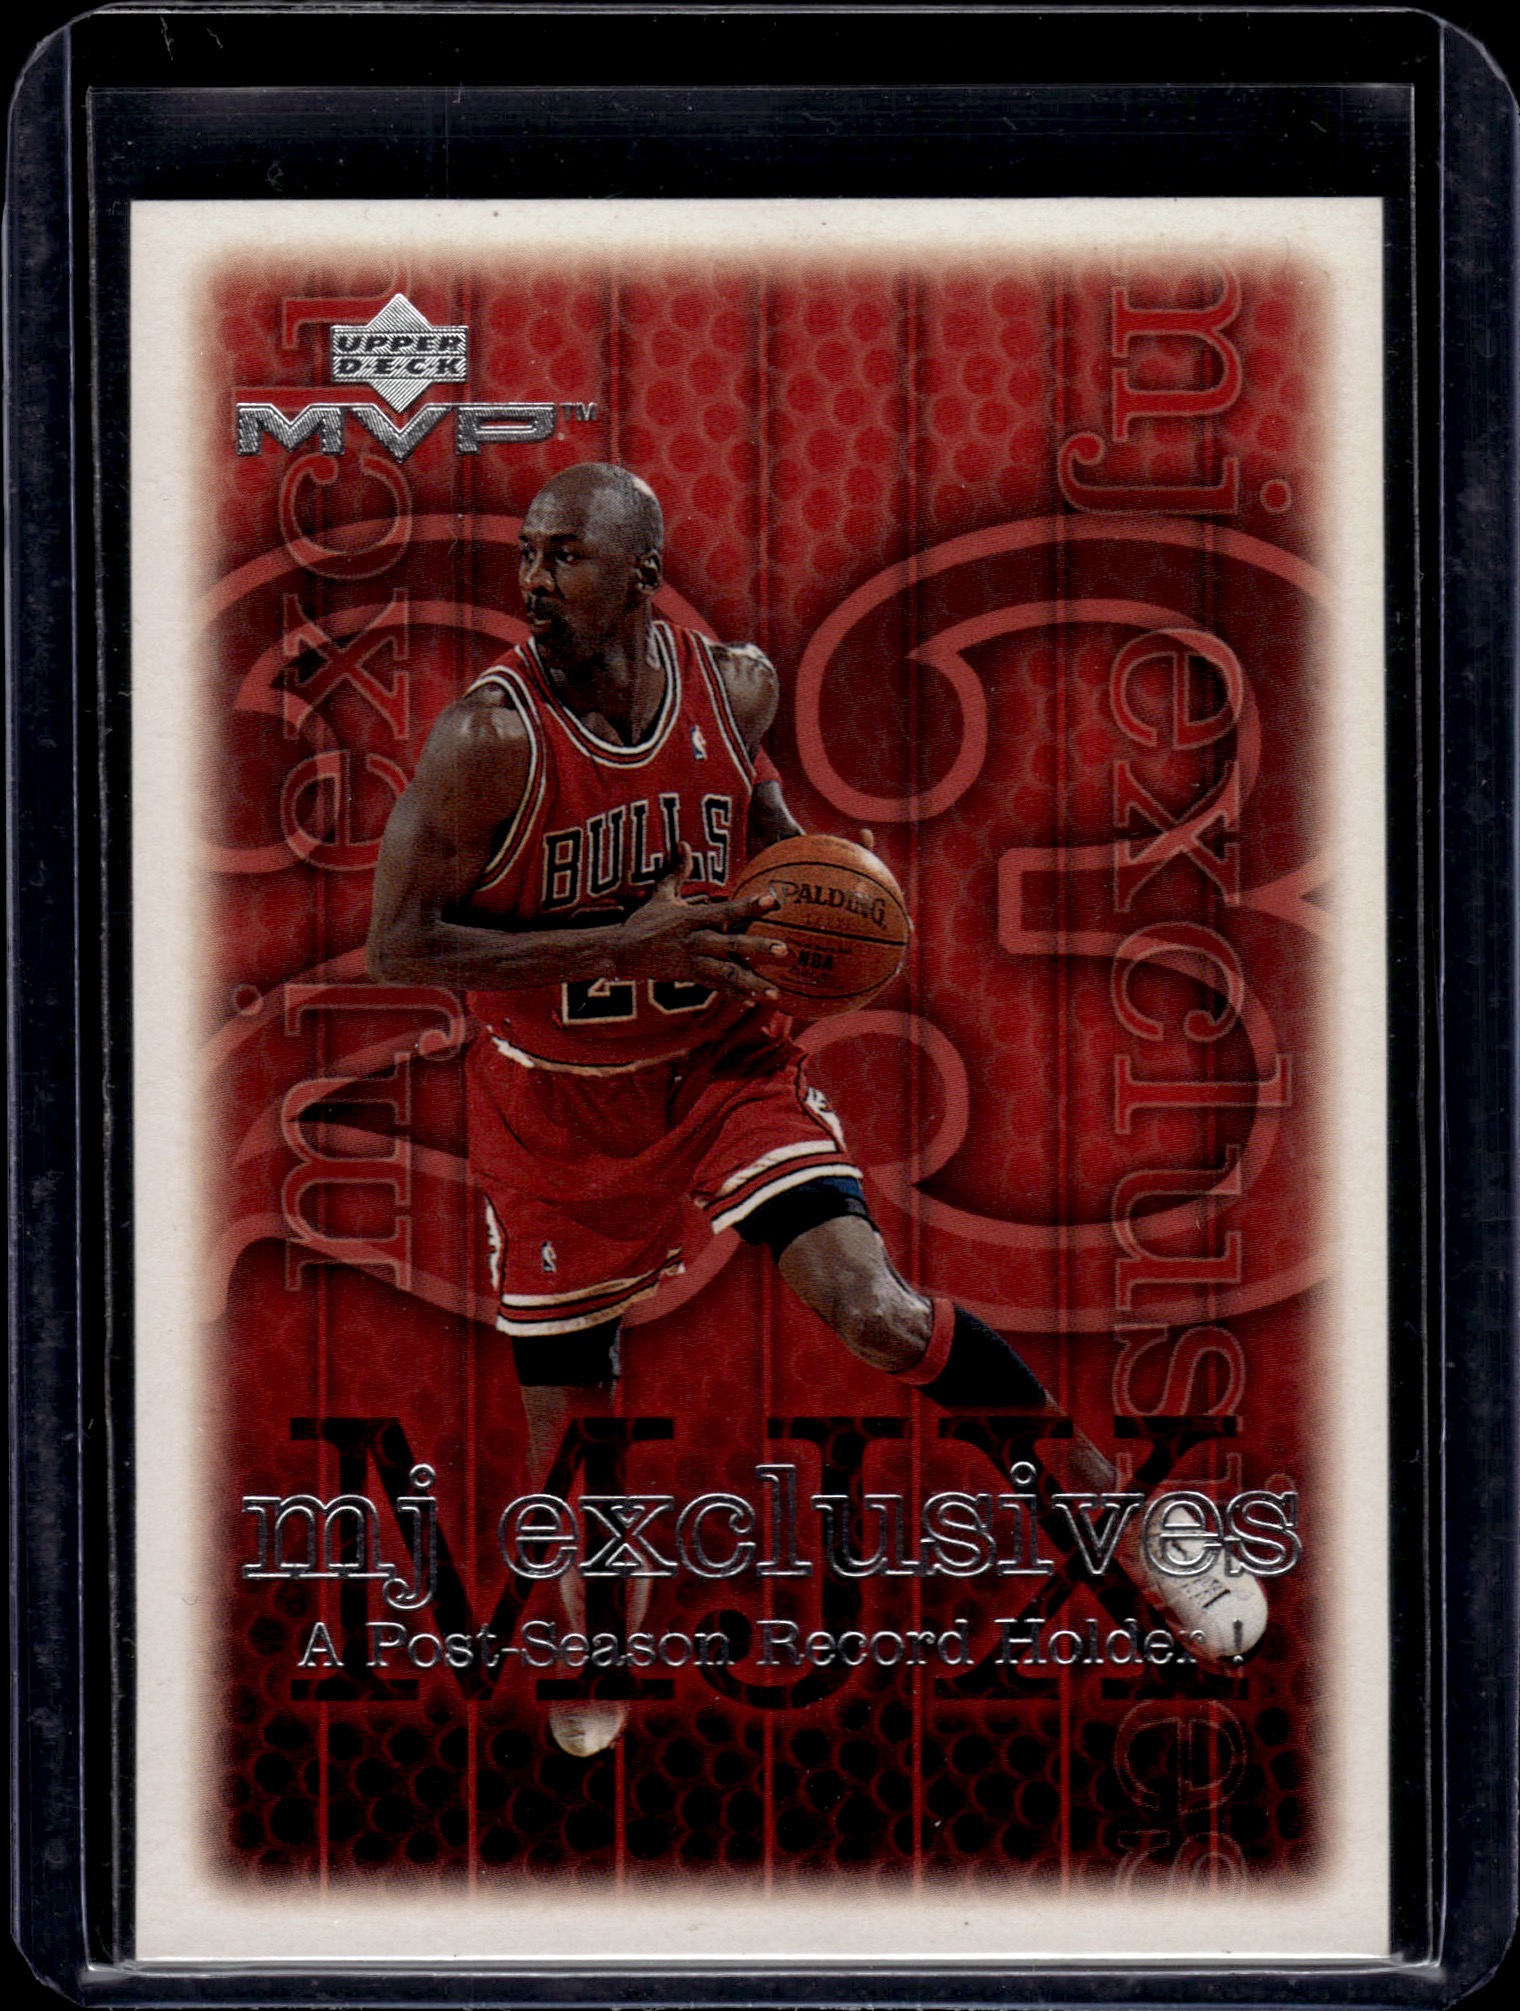 1999 Upper Deck Tribute to Jordan number 12 jersey card - Michael Jordan  Cards